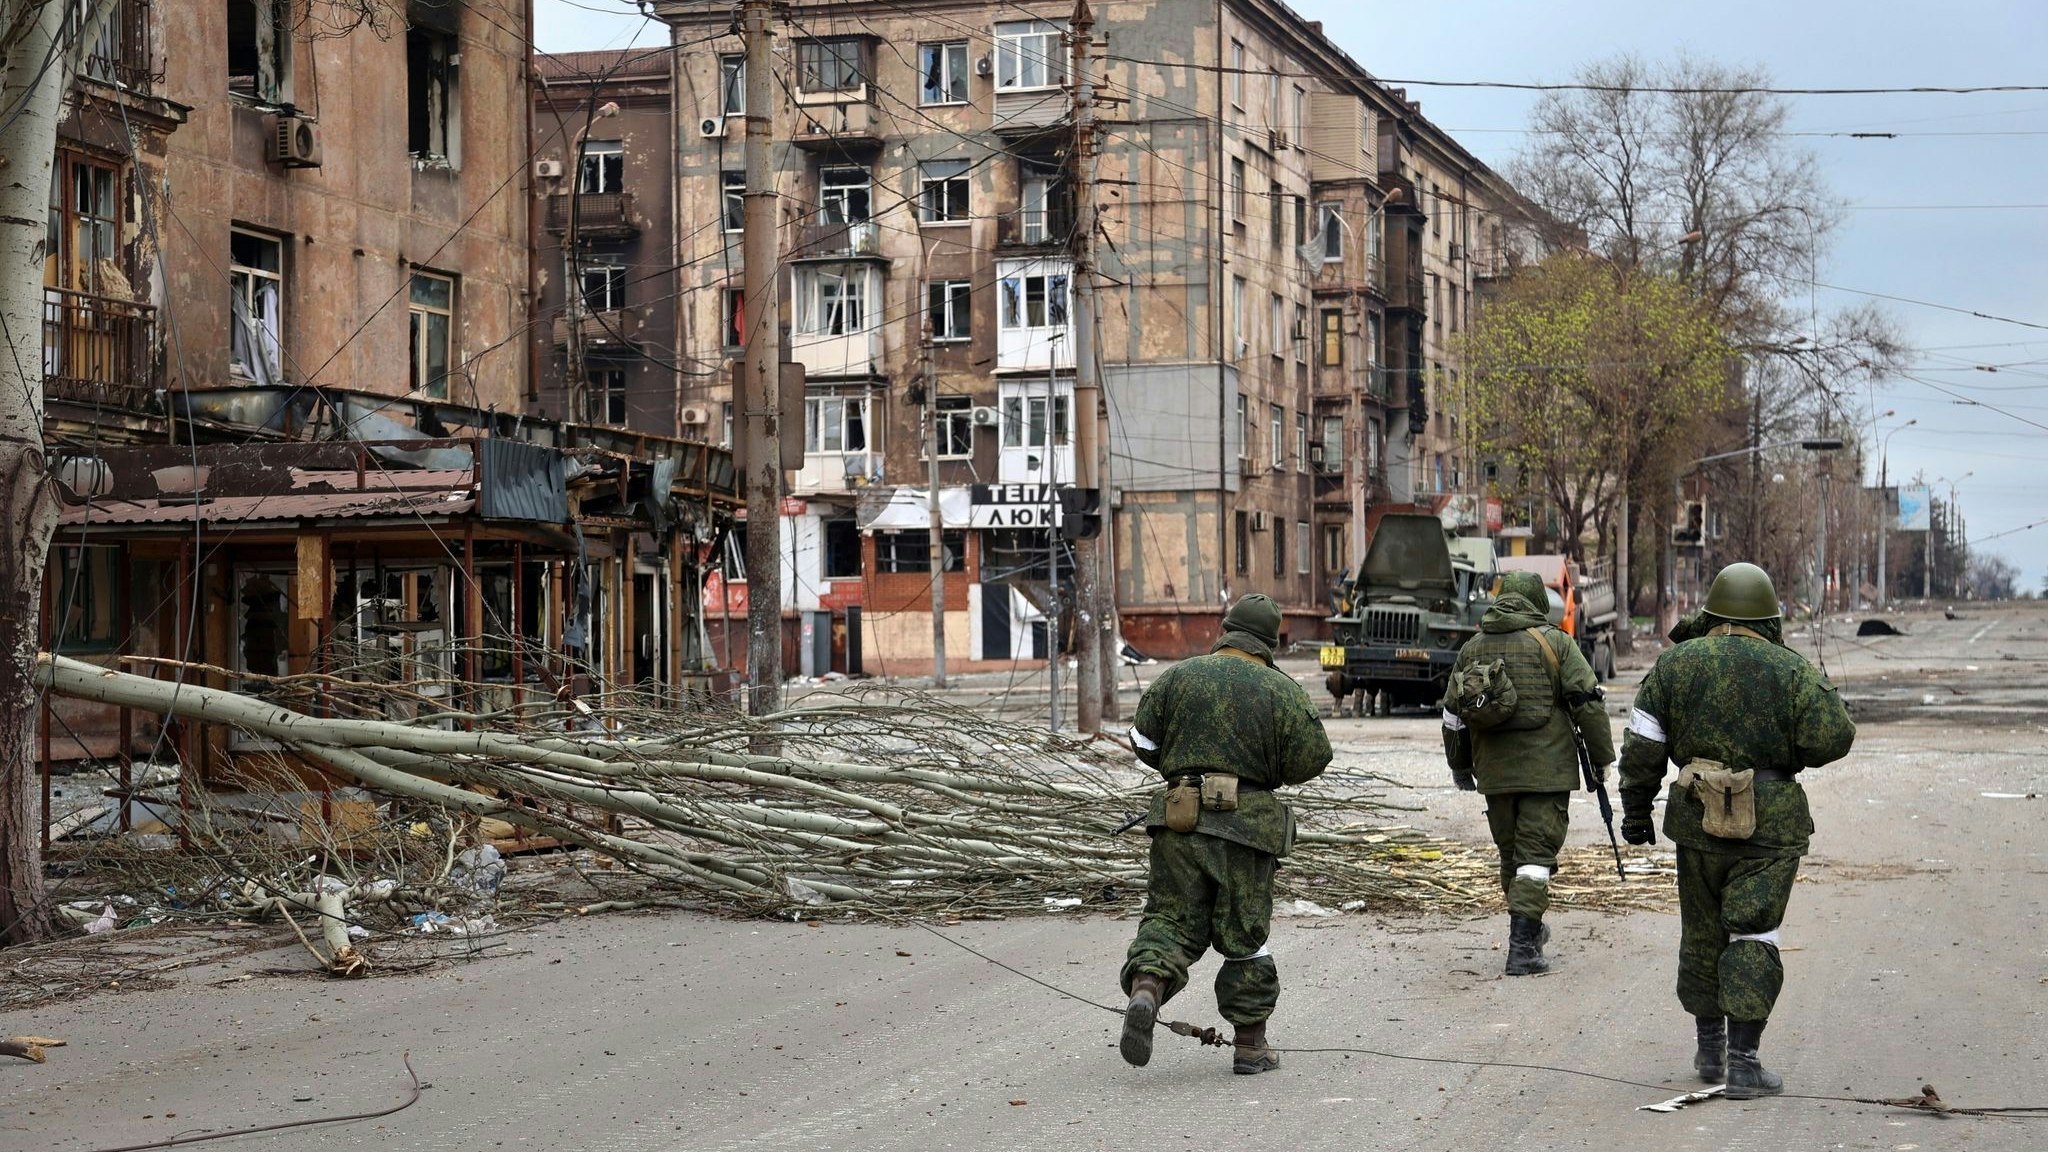 Soldaten der Miliz der „Volksrepublik“ Donezk gehen an beschädigten Wohnhäusern in Mariupol vorbei. Foto: dpa/Alexandrov